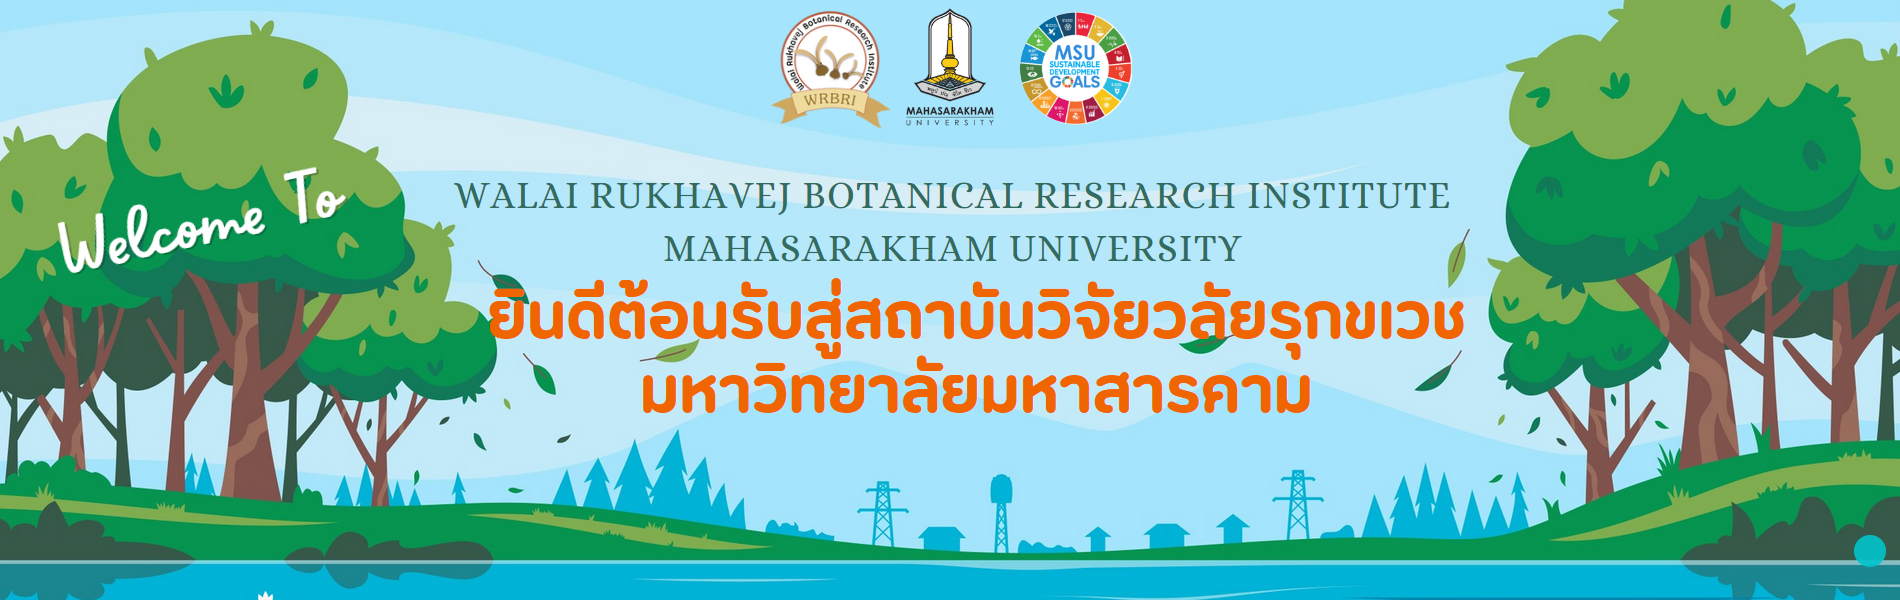 สถาบันวิจัยวลัยรุกขเวช | สถาบันวิจัยด้านความหลากหลายทางชีวภาพและภูมิปัญญาท้องถิ่นของประเทศไทย